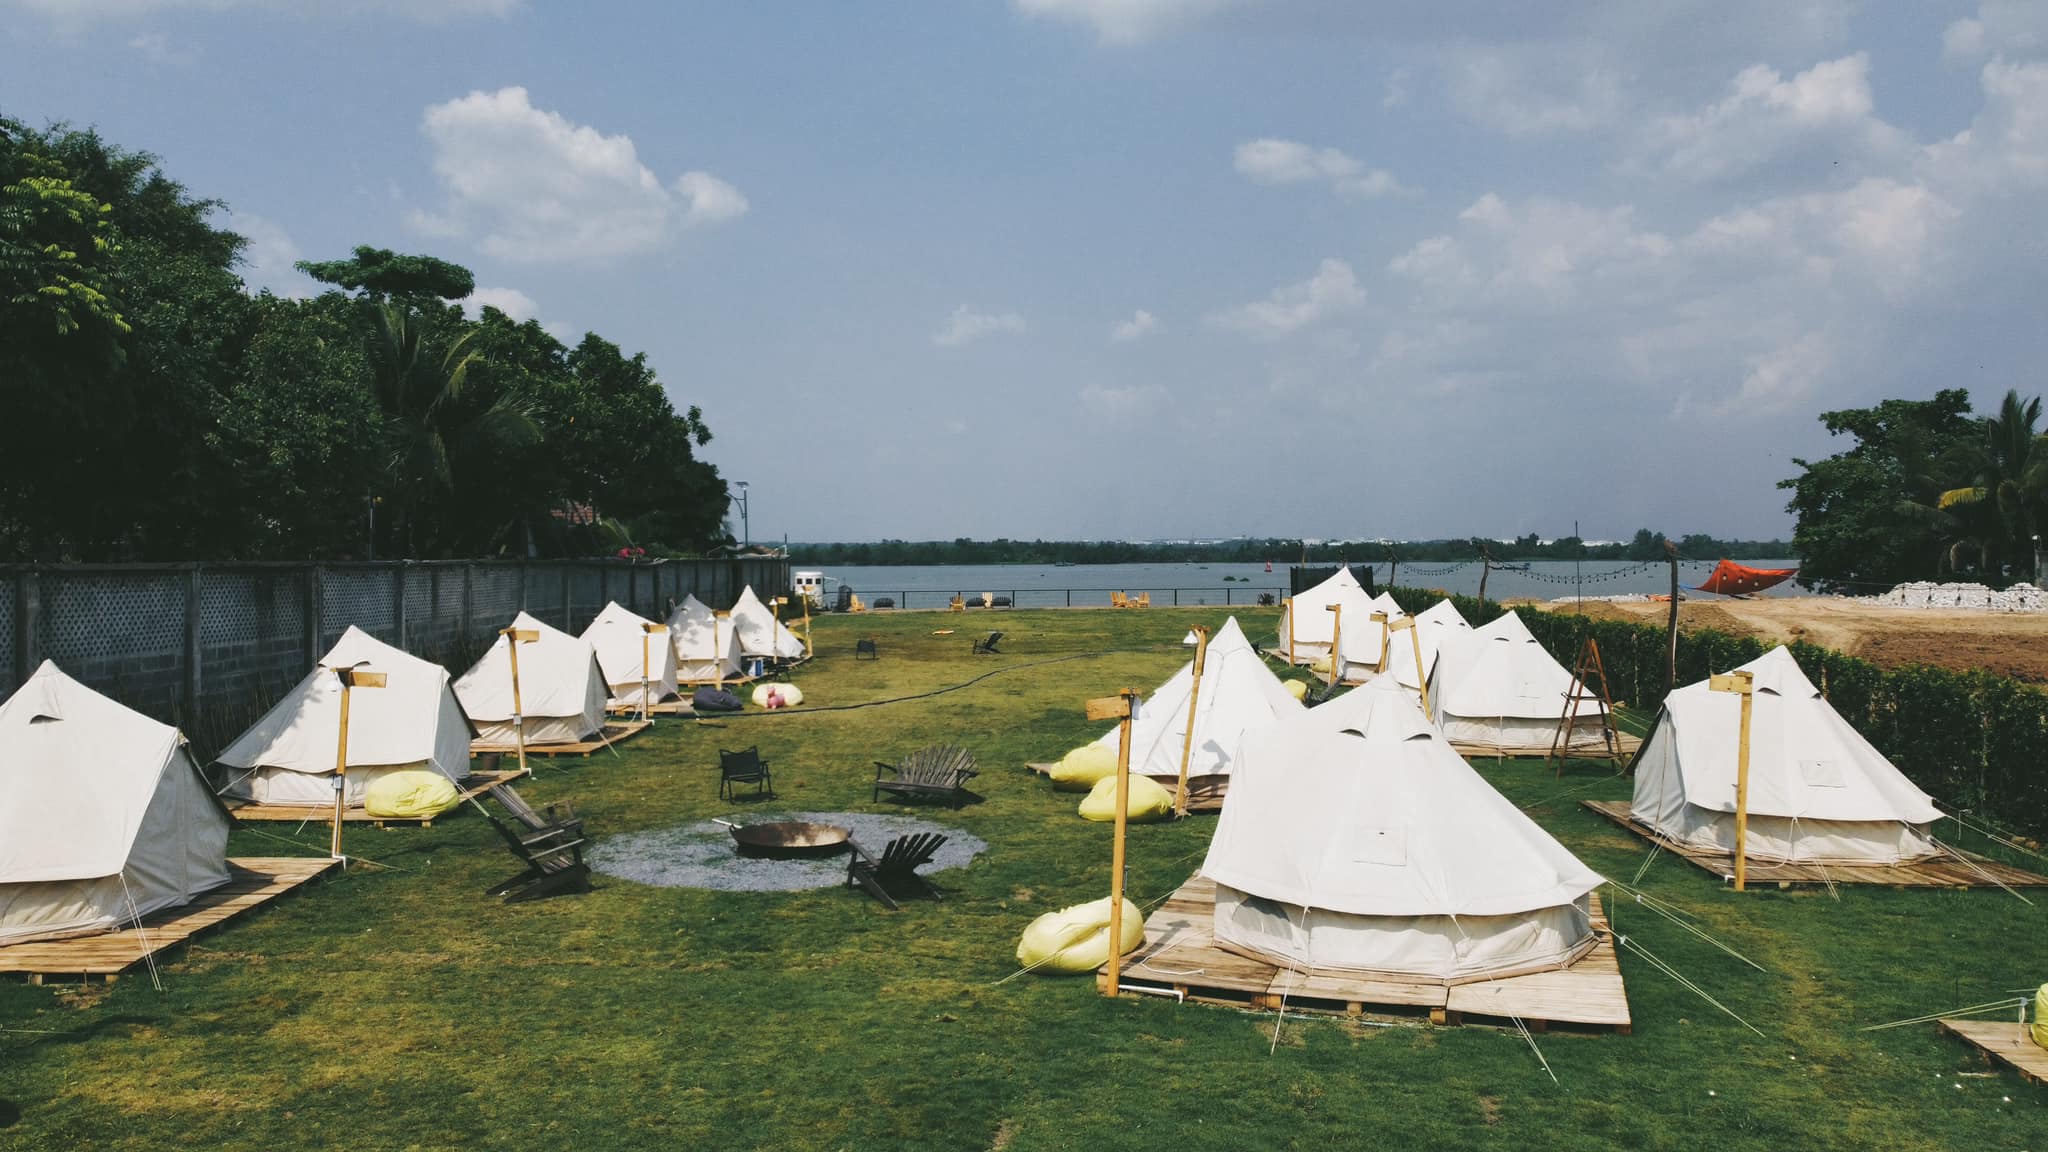 Địa điểm cắm trại giữa lòng Sài Gòn - Vietgangz Glamping Club - Tabalo Outdoor